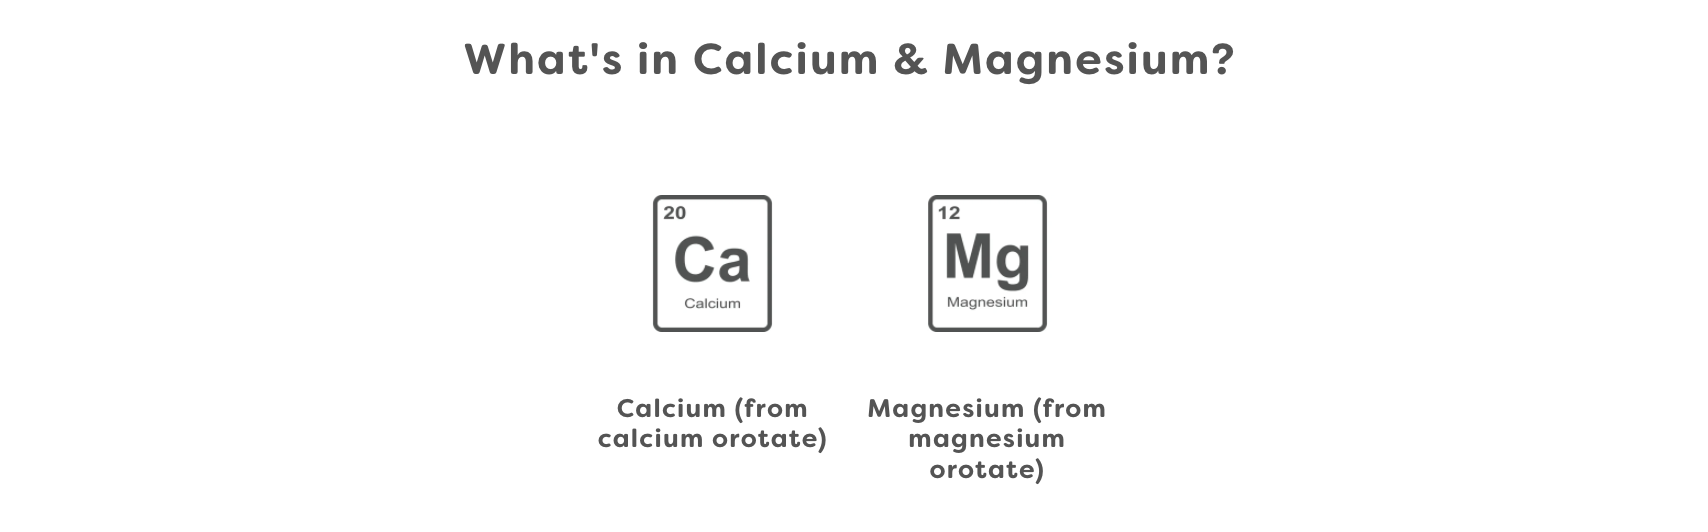 What's in Calcium & Magnesium